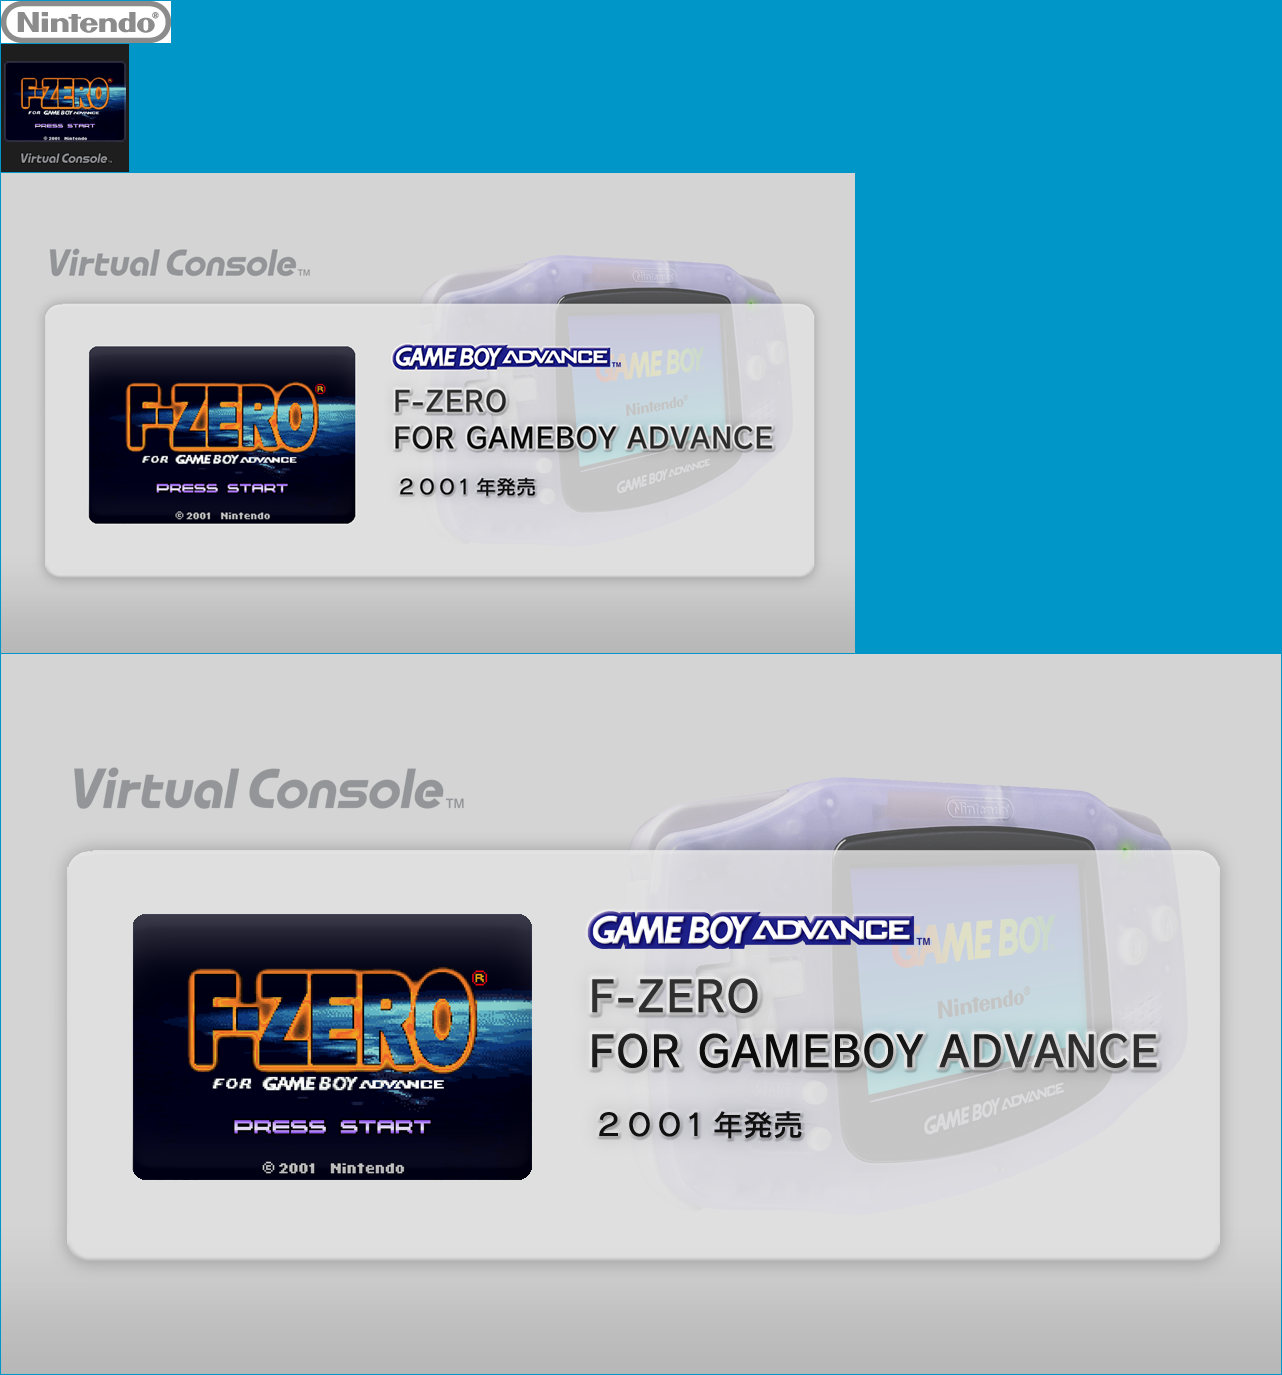 Virtual Console - F-ZERO FOR GAMEBOY ADVANCE